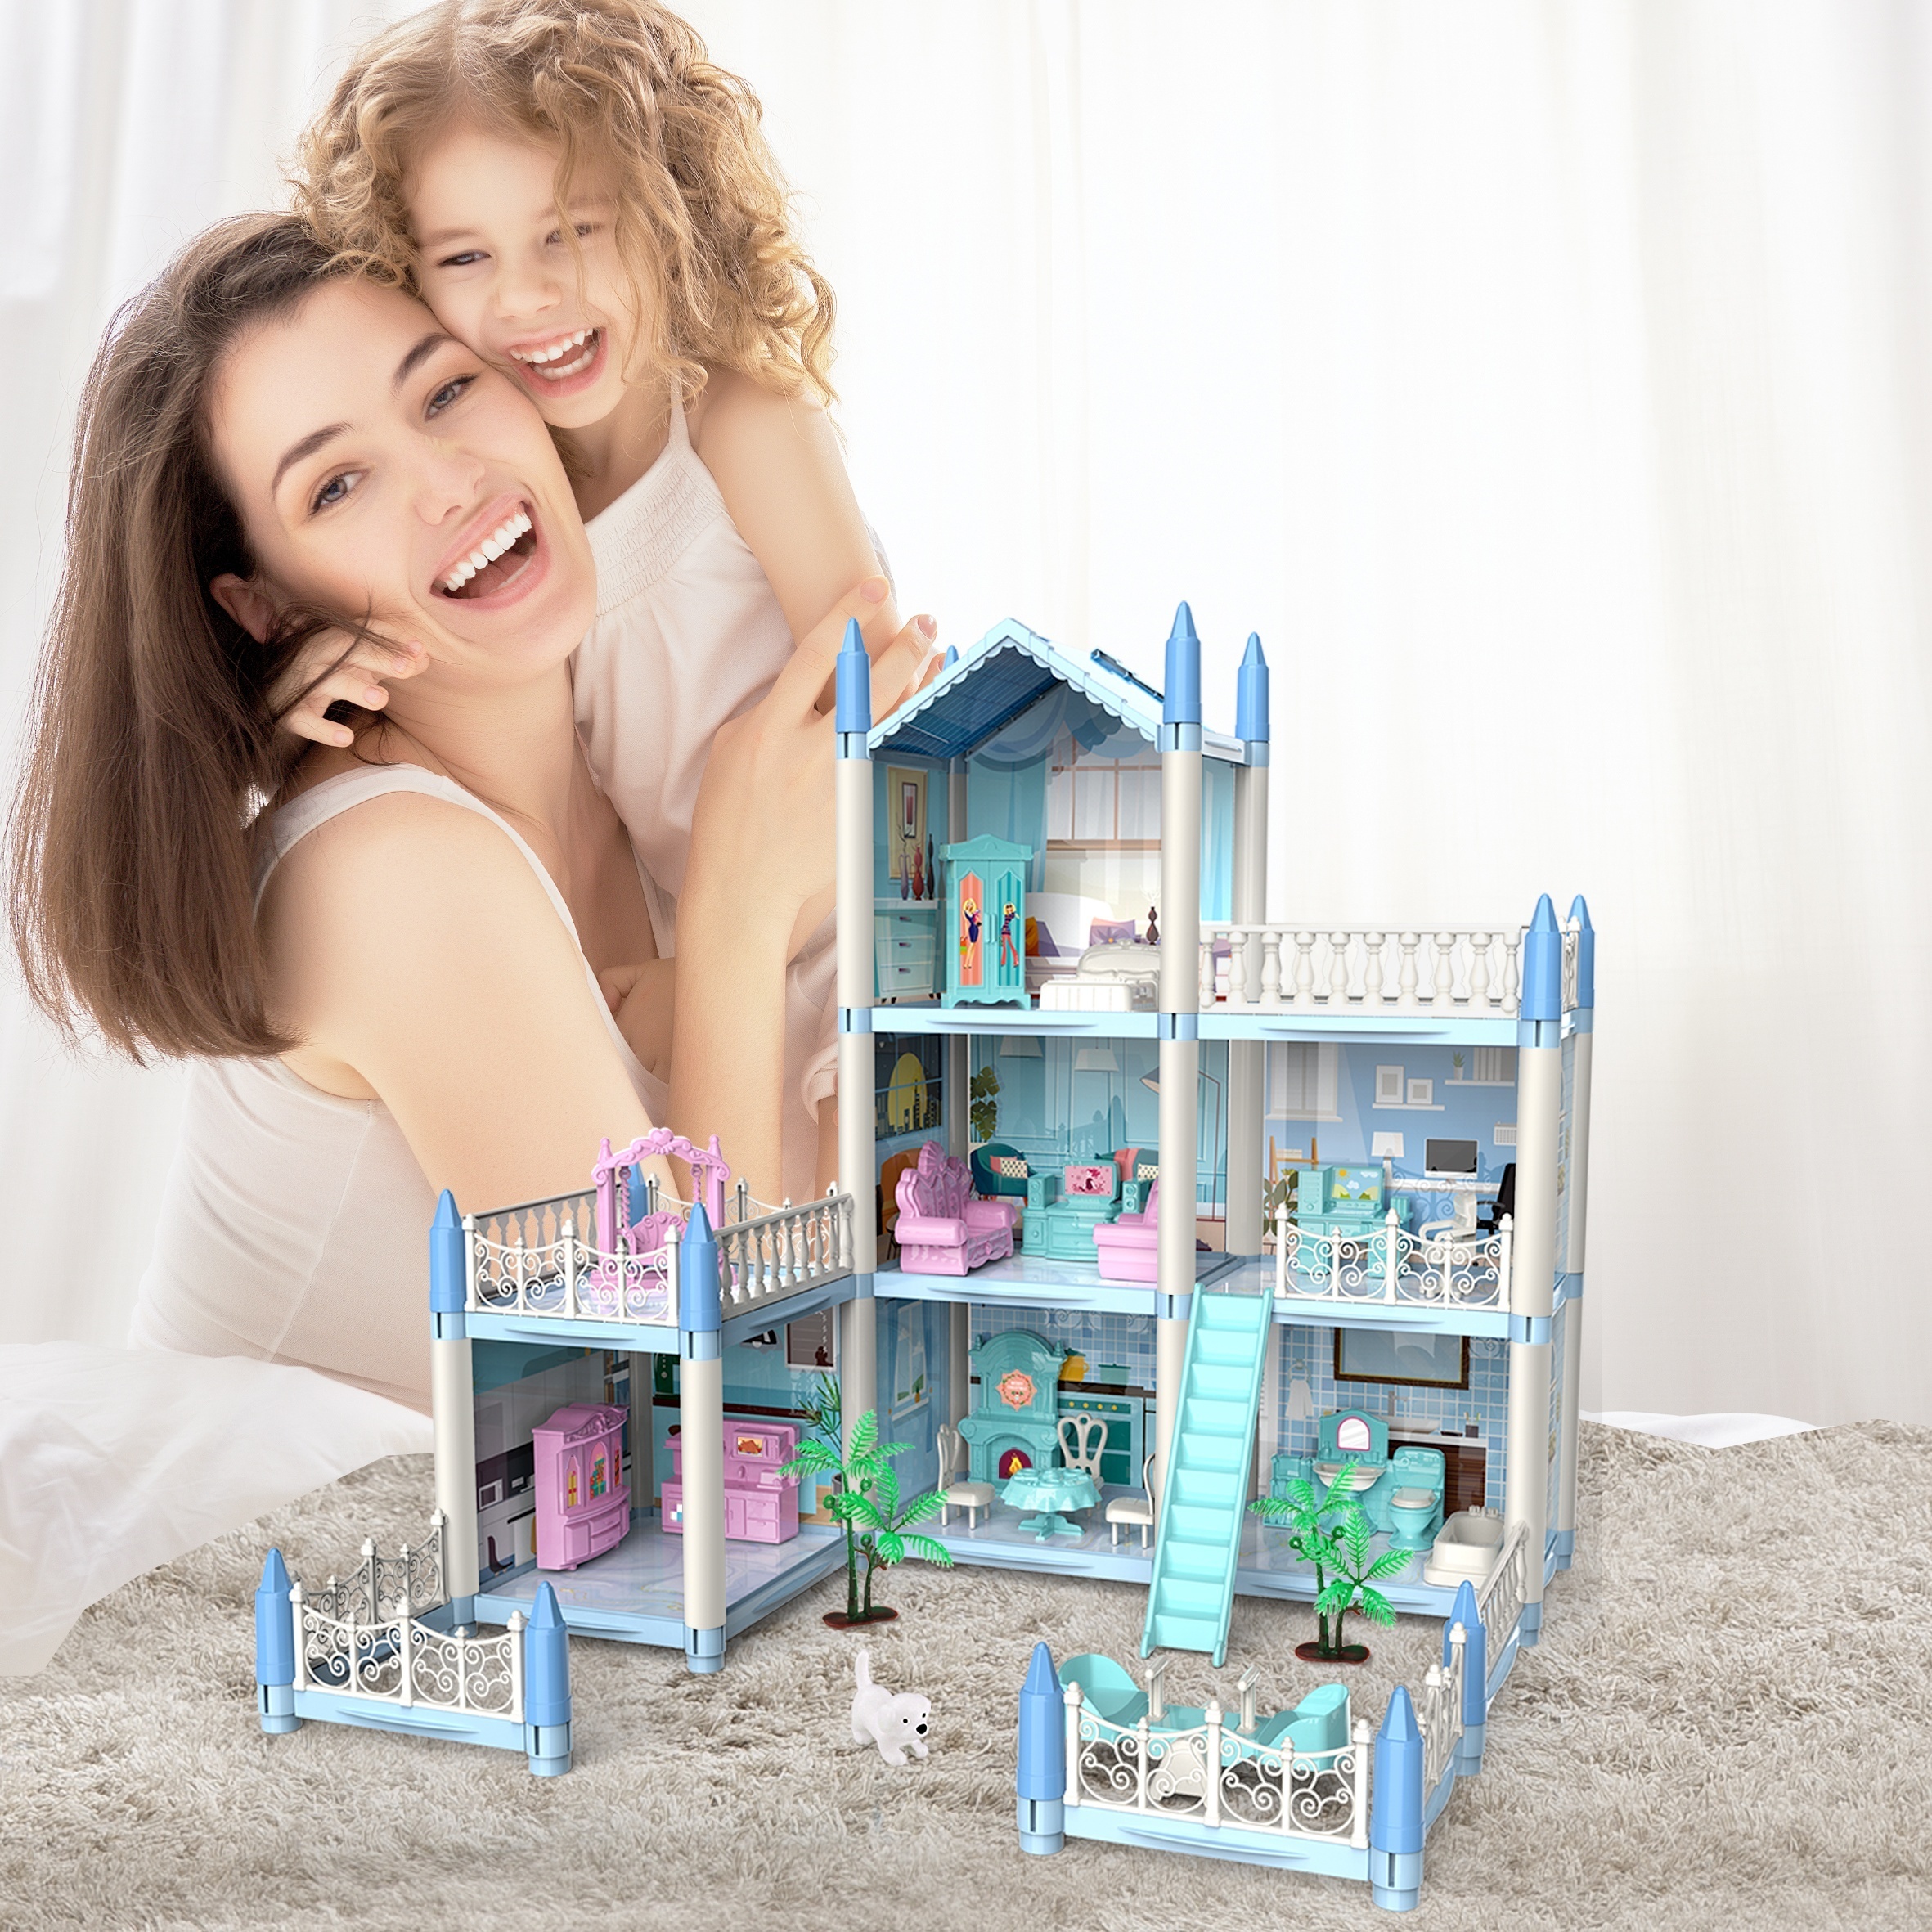 Barbie Mobilier Dreamhouse, maison de rêve pour poupées avec